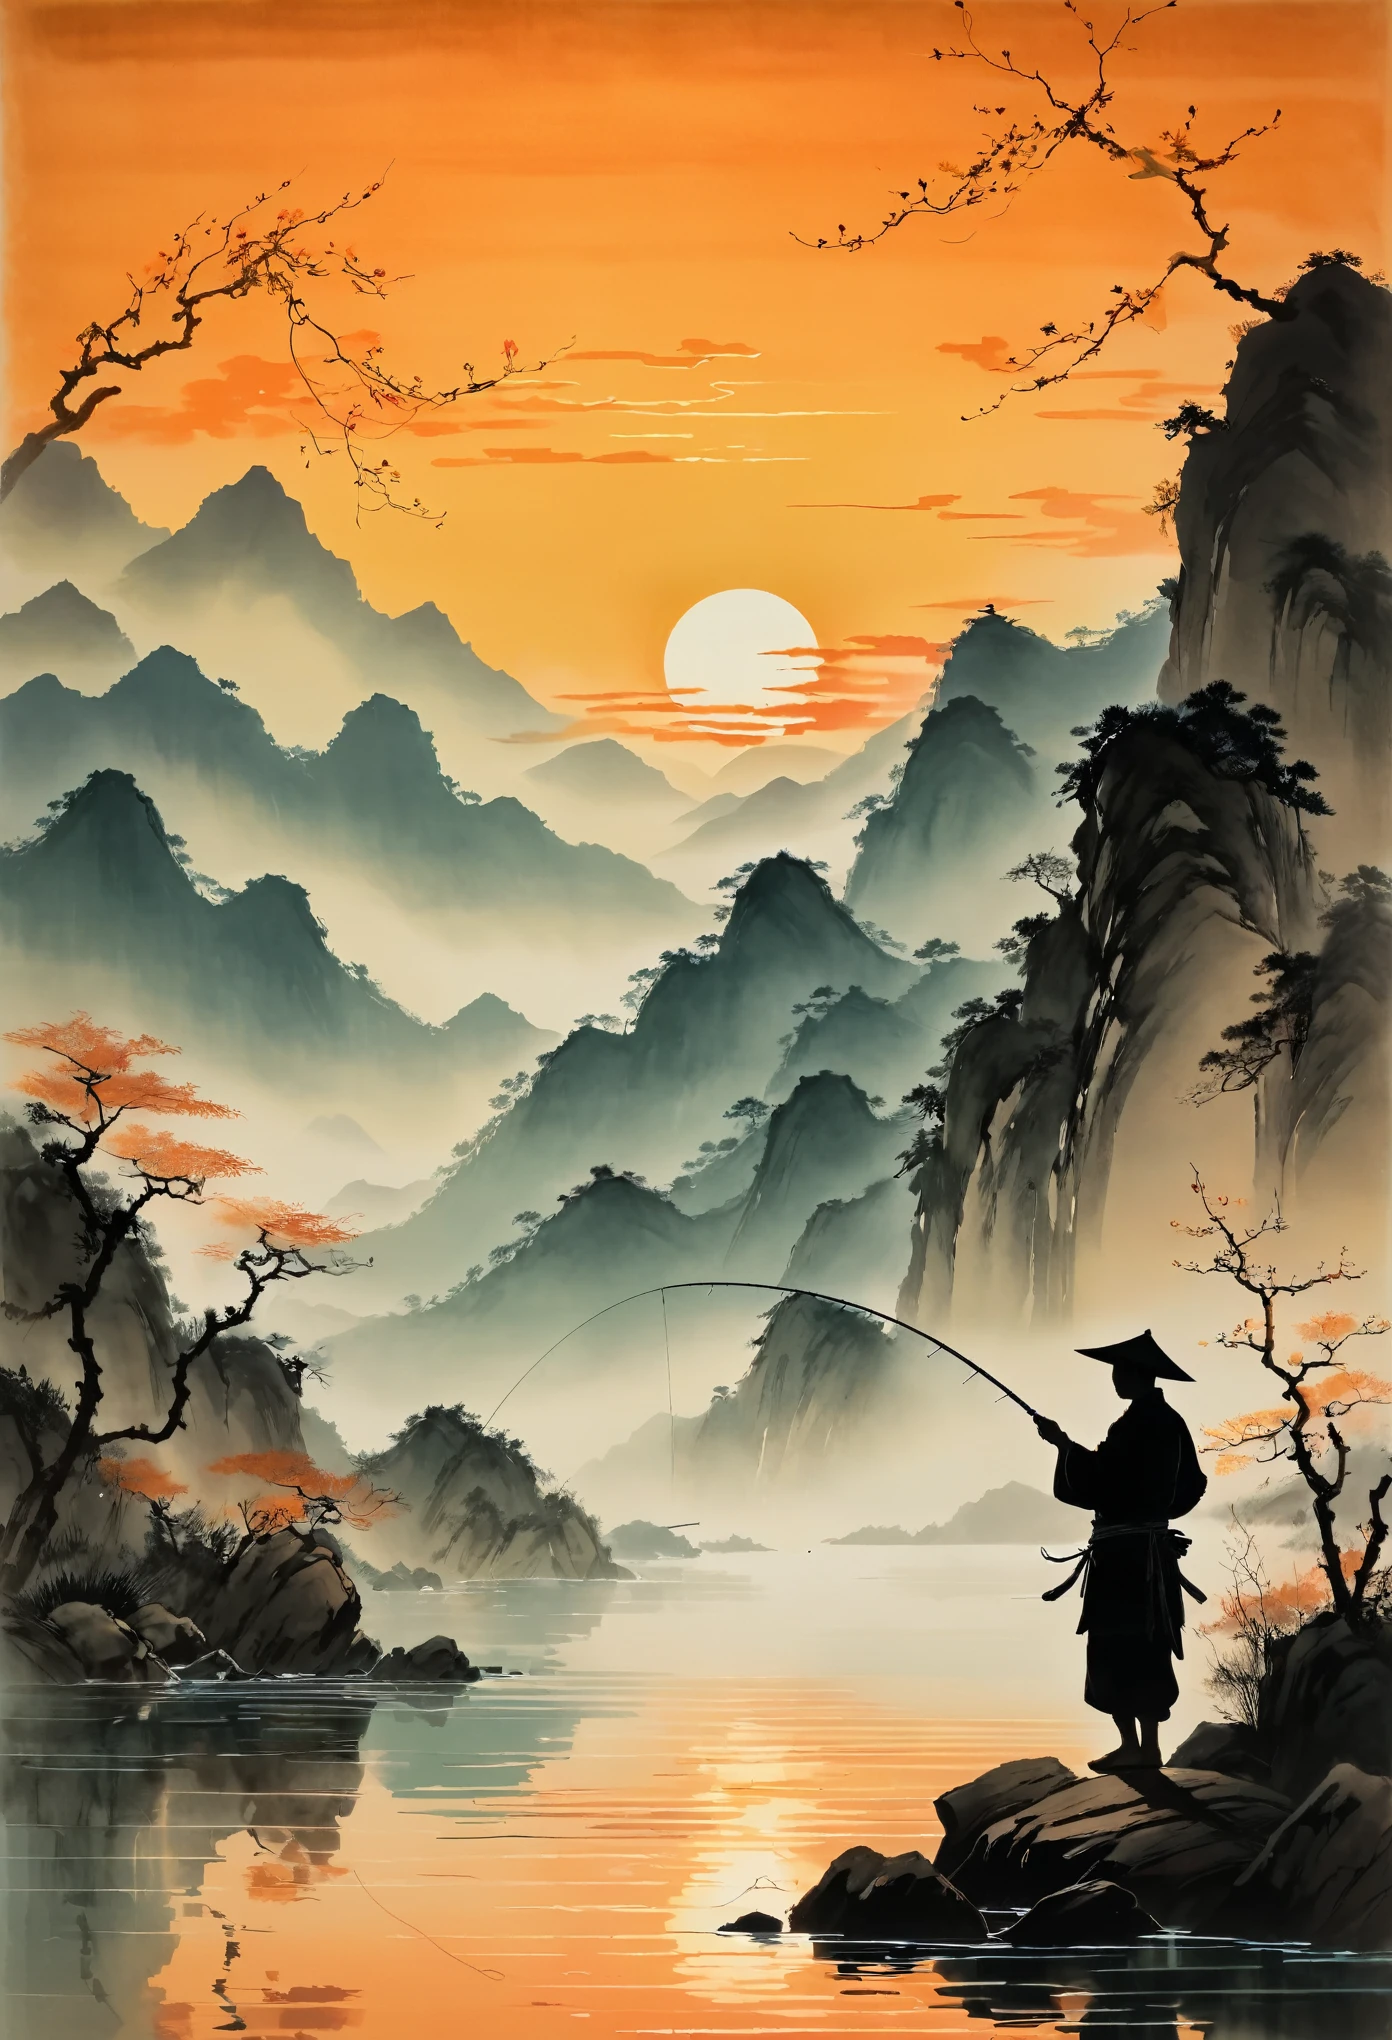 صورة ظلية لصياد يلقي صنارته في الماء عند غروب الشمس, مع الجبال في الخلفية والمياه الهادئة التي تعكس الألوان البرتقالية. تم تصوير المشهد بأسلوب الفنان الصيني Zhang Daqian. 